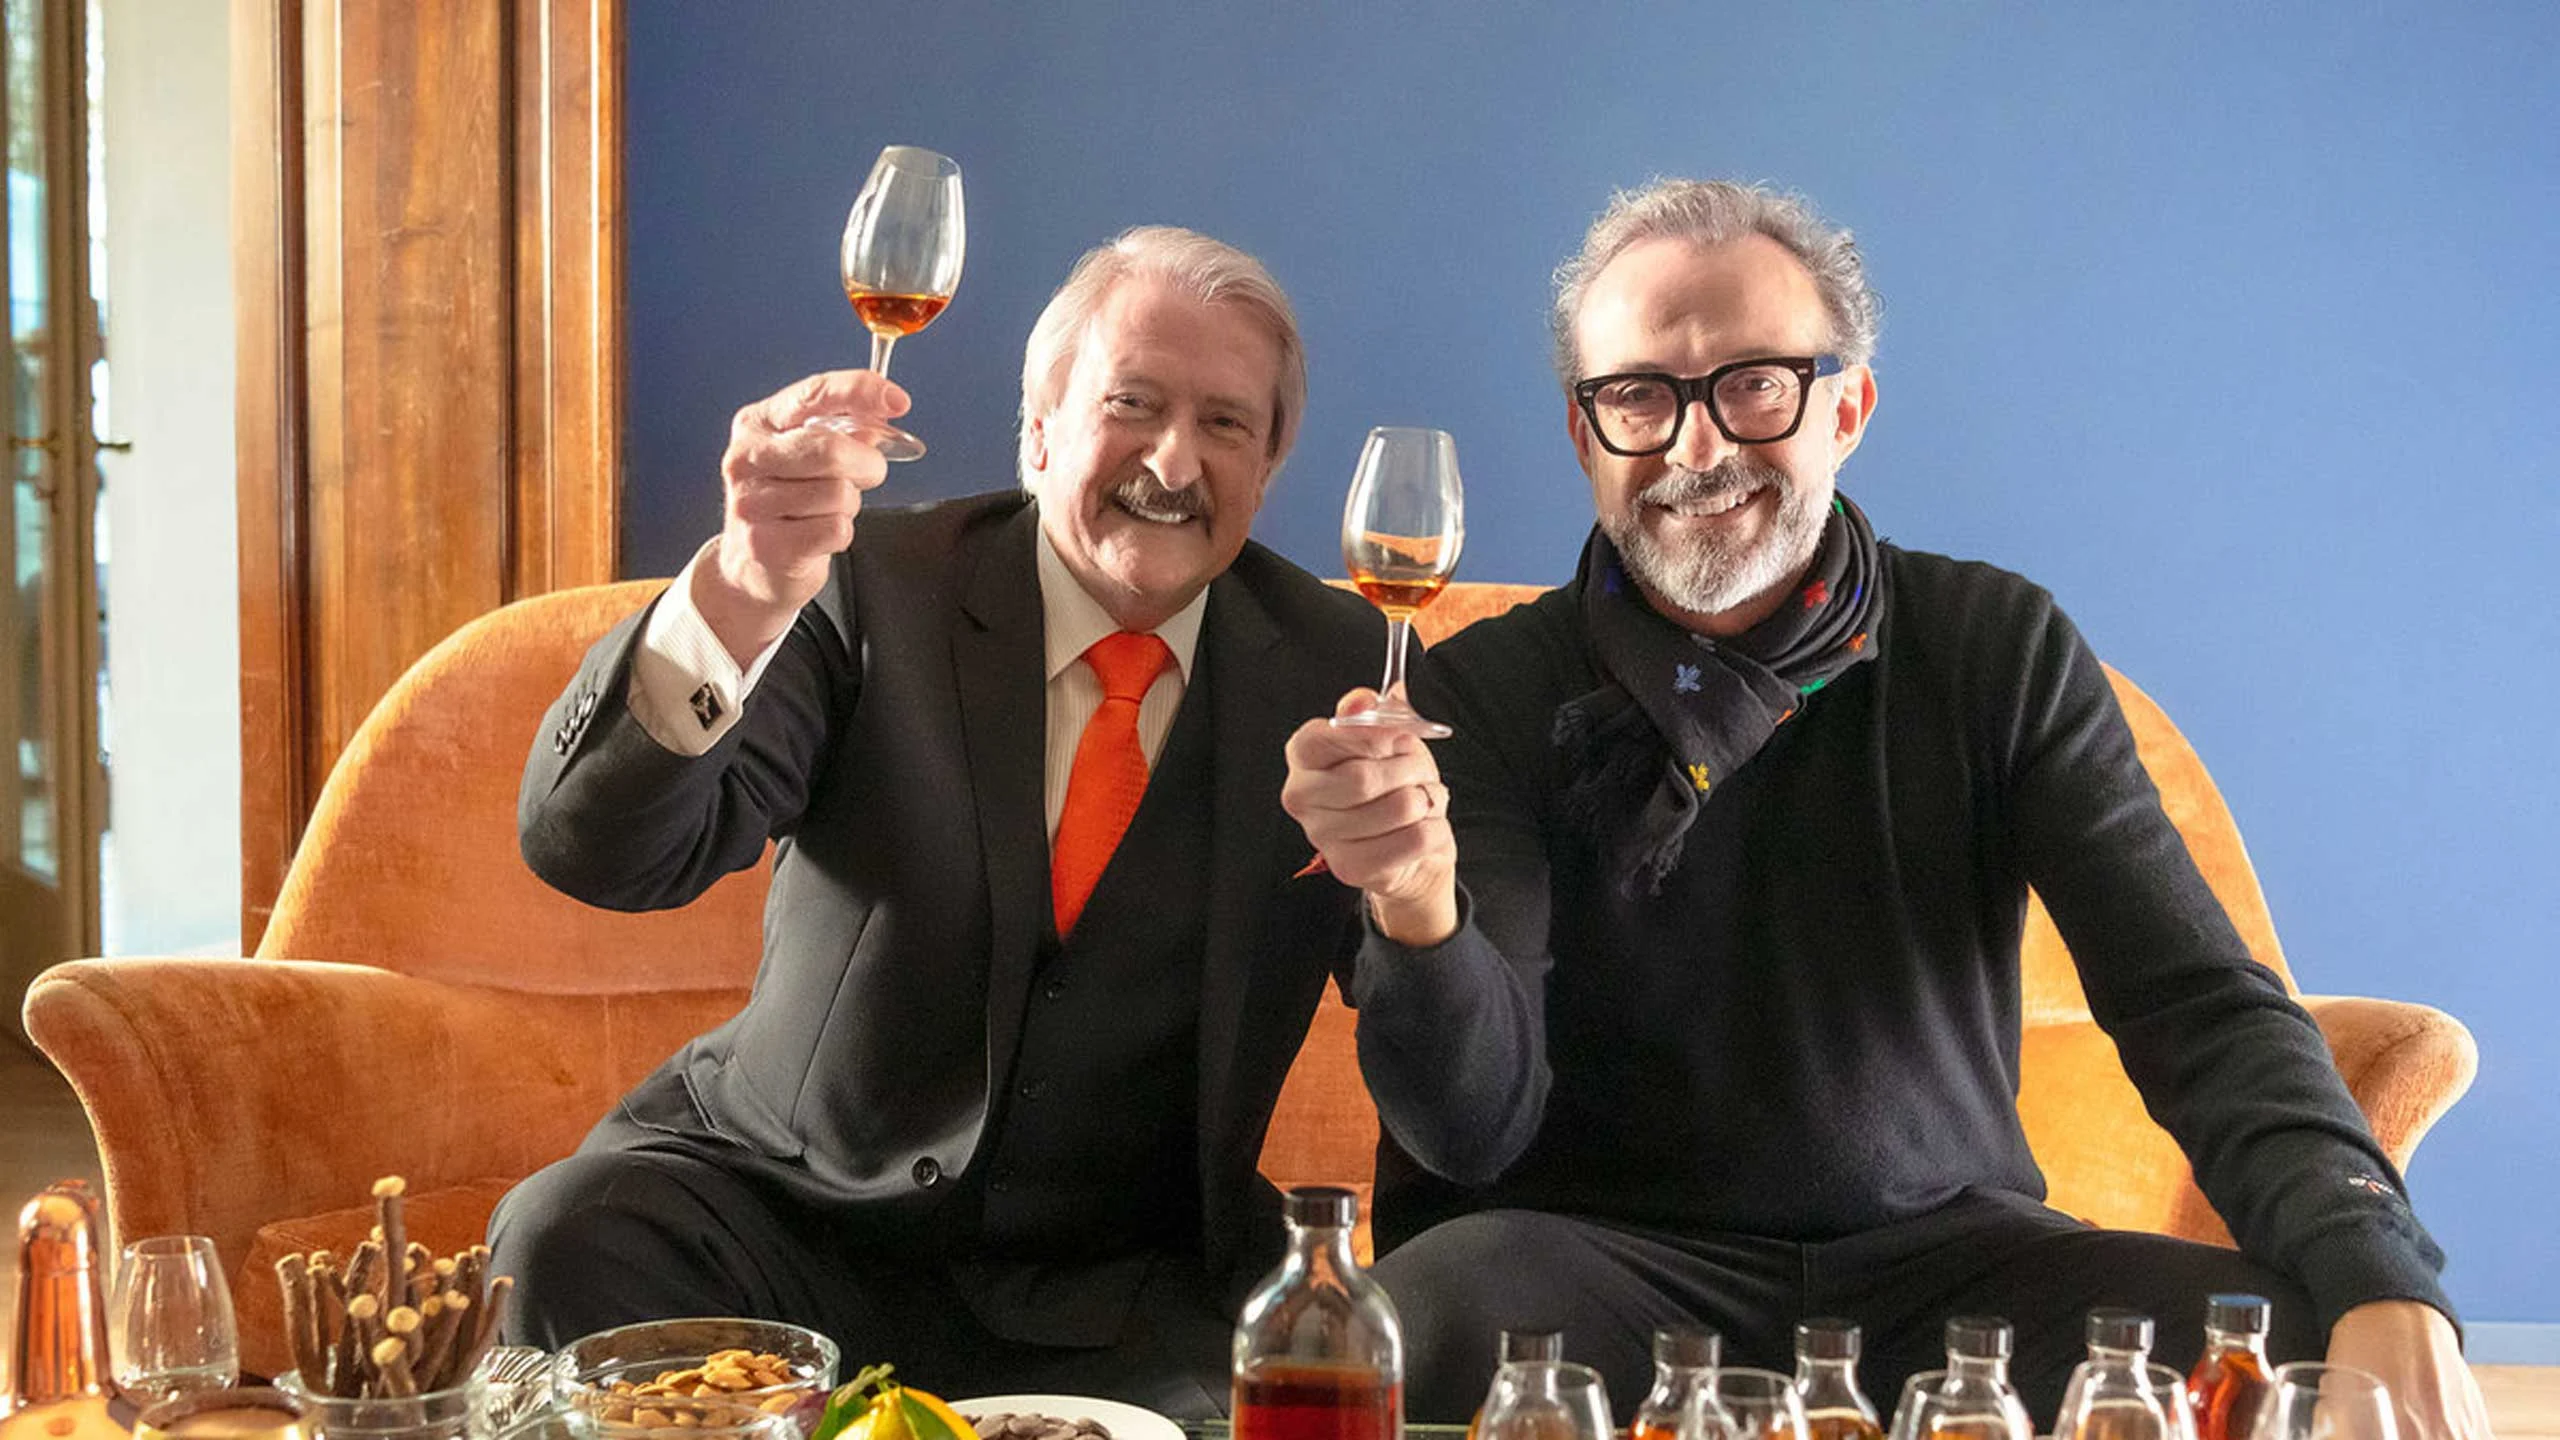 El whisky de Massimo Bottura se vendió en más de $140,000 dólares